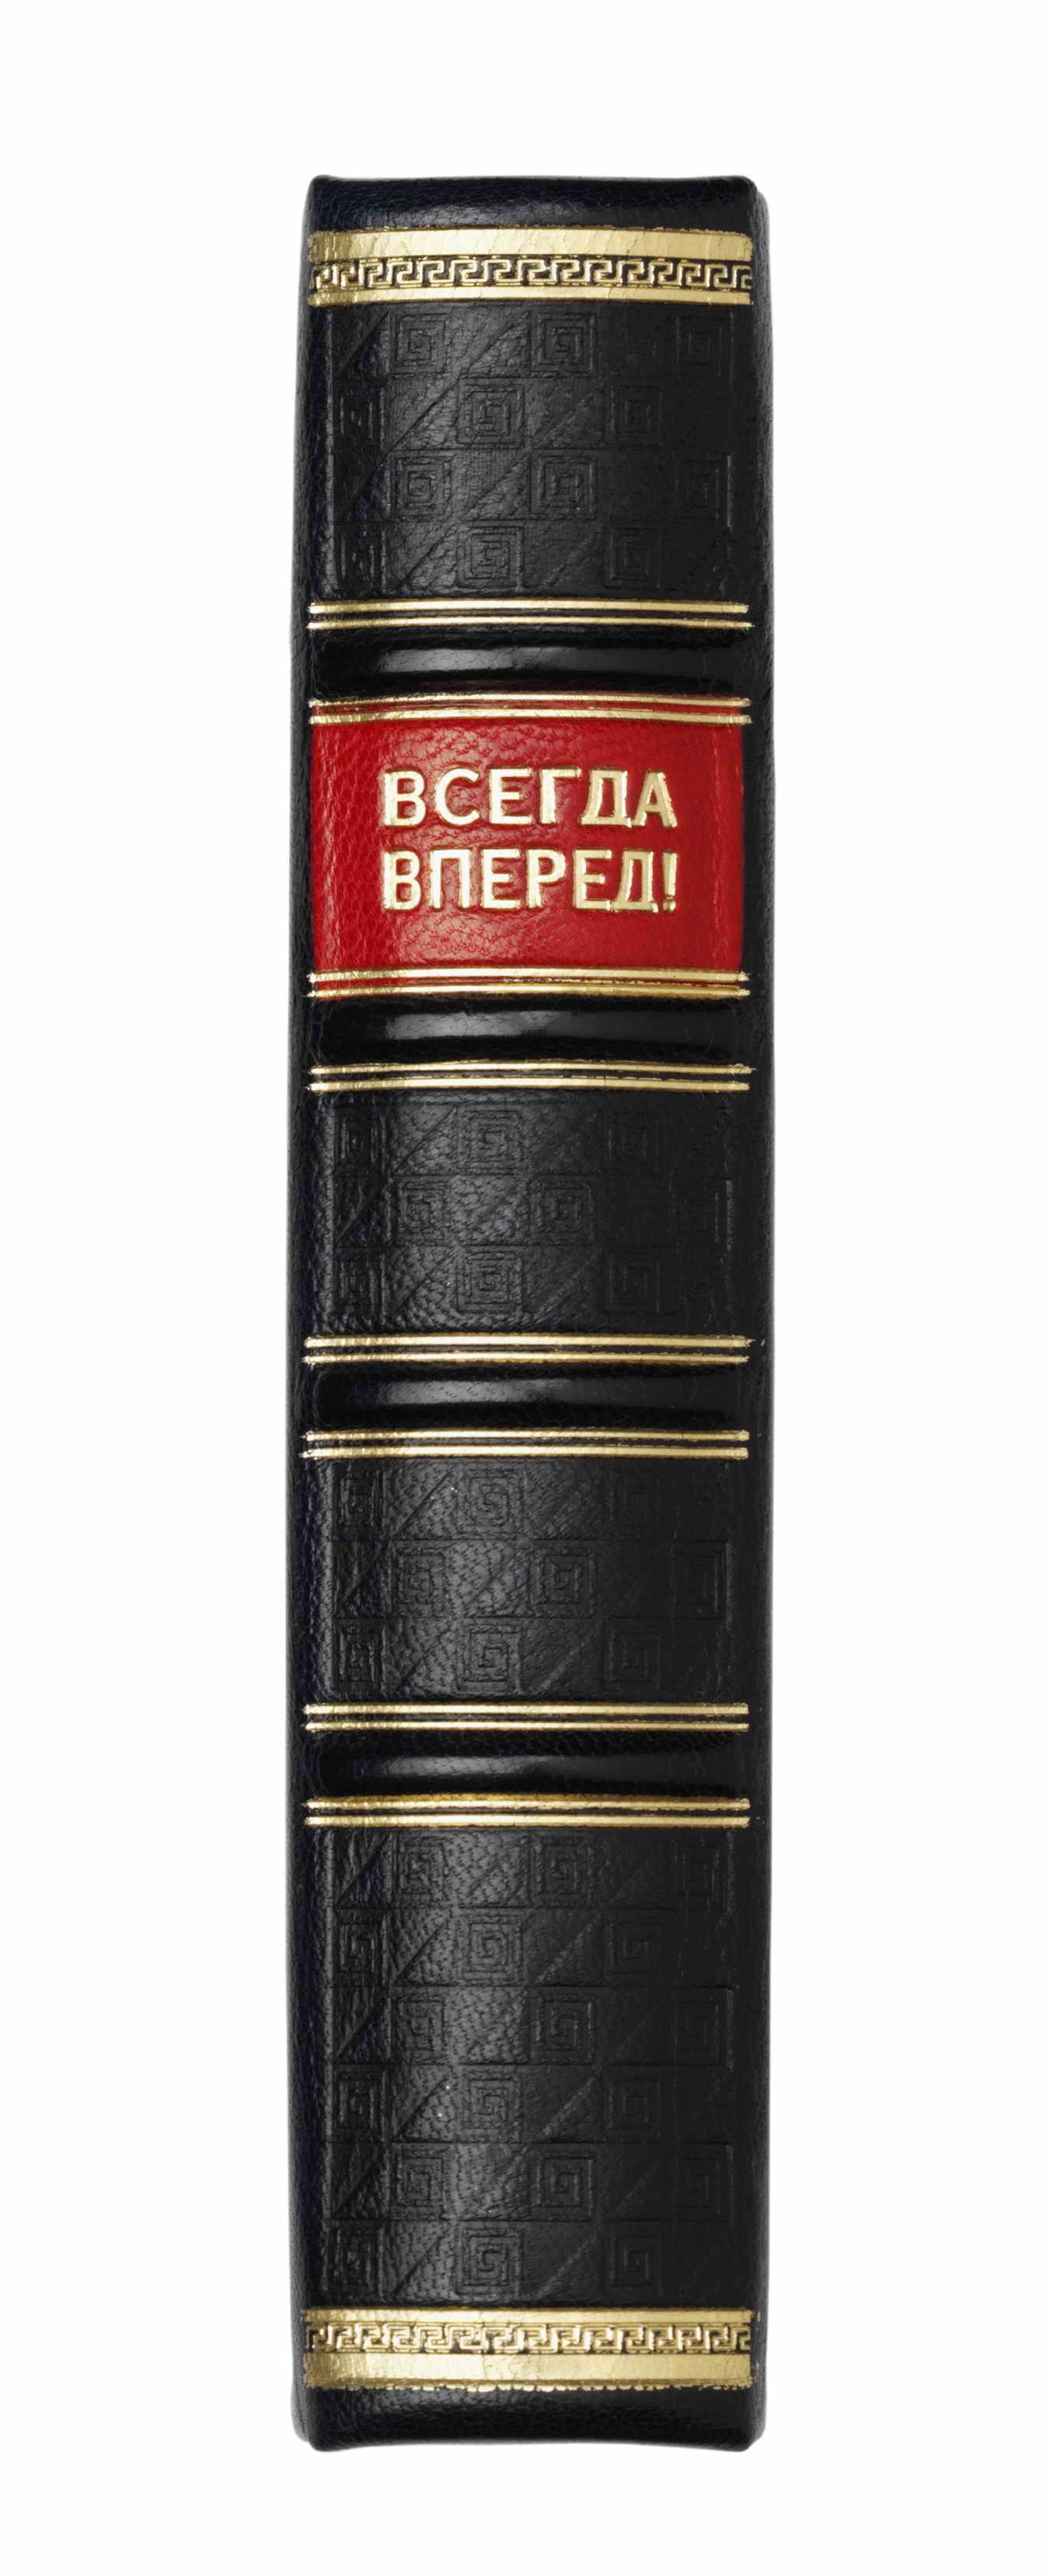 Купить подарки Книга "Всегда вперед!"  в интернет-магазине, цена подарков Книга "Всегда вперед!" в Москве с доставкой